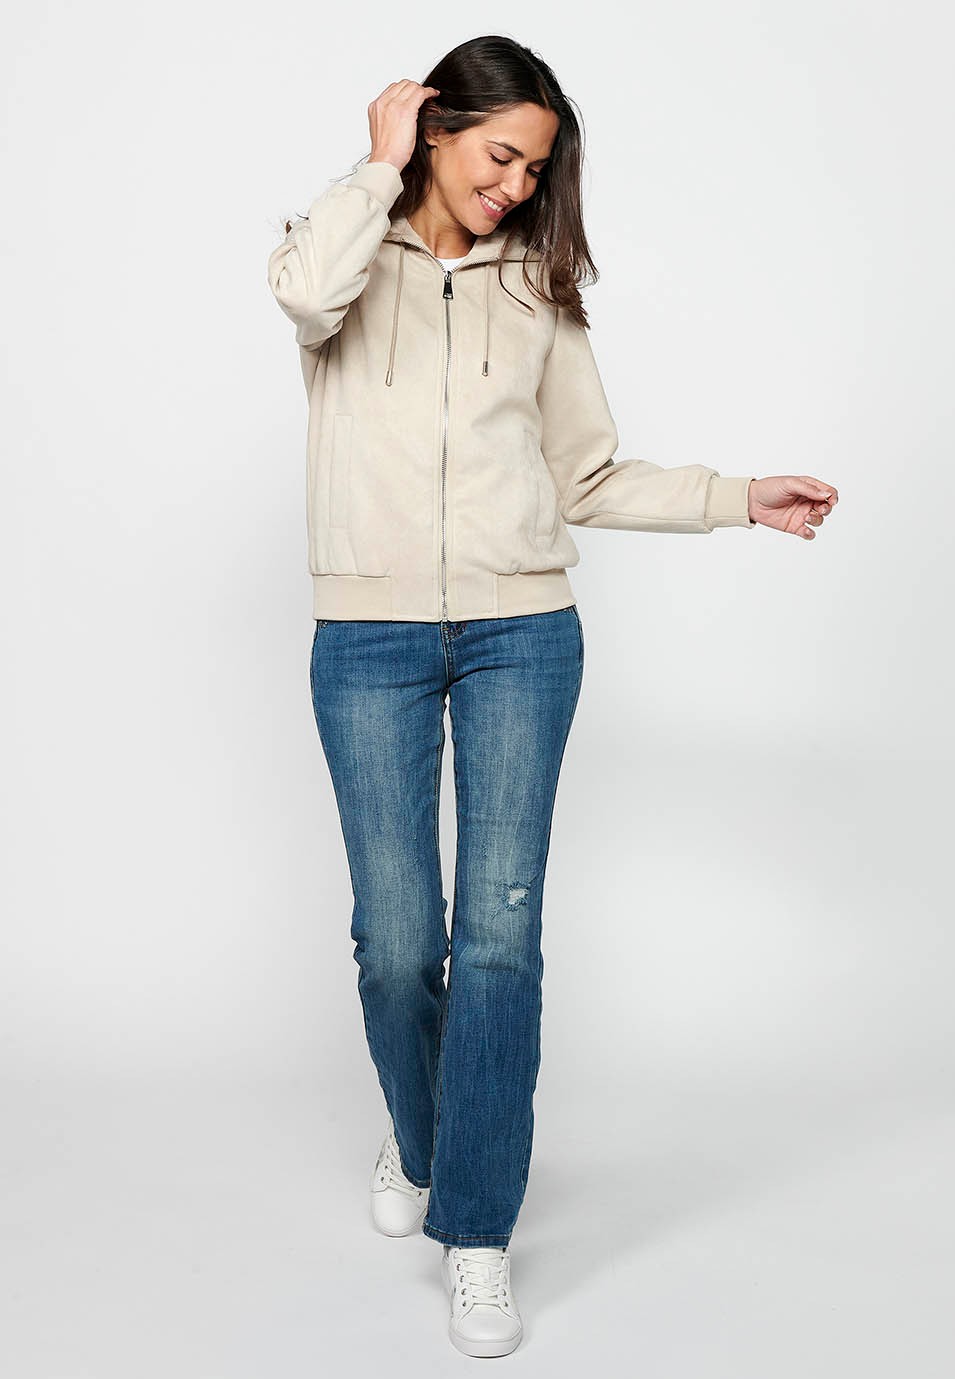 Women's Ecru Color Hooded Collar Long Sleeve Zip Front Closure Sweatshirt Jacket 5